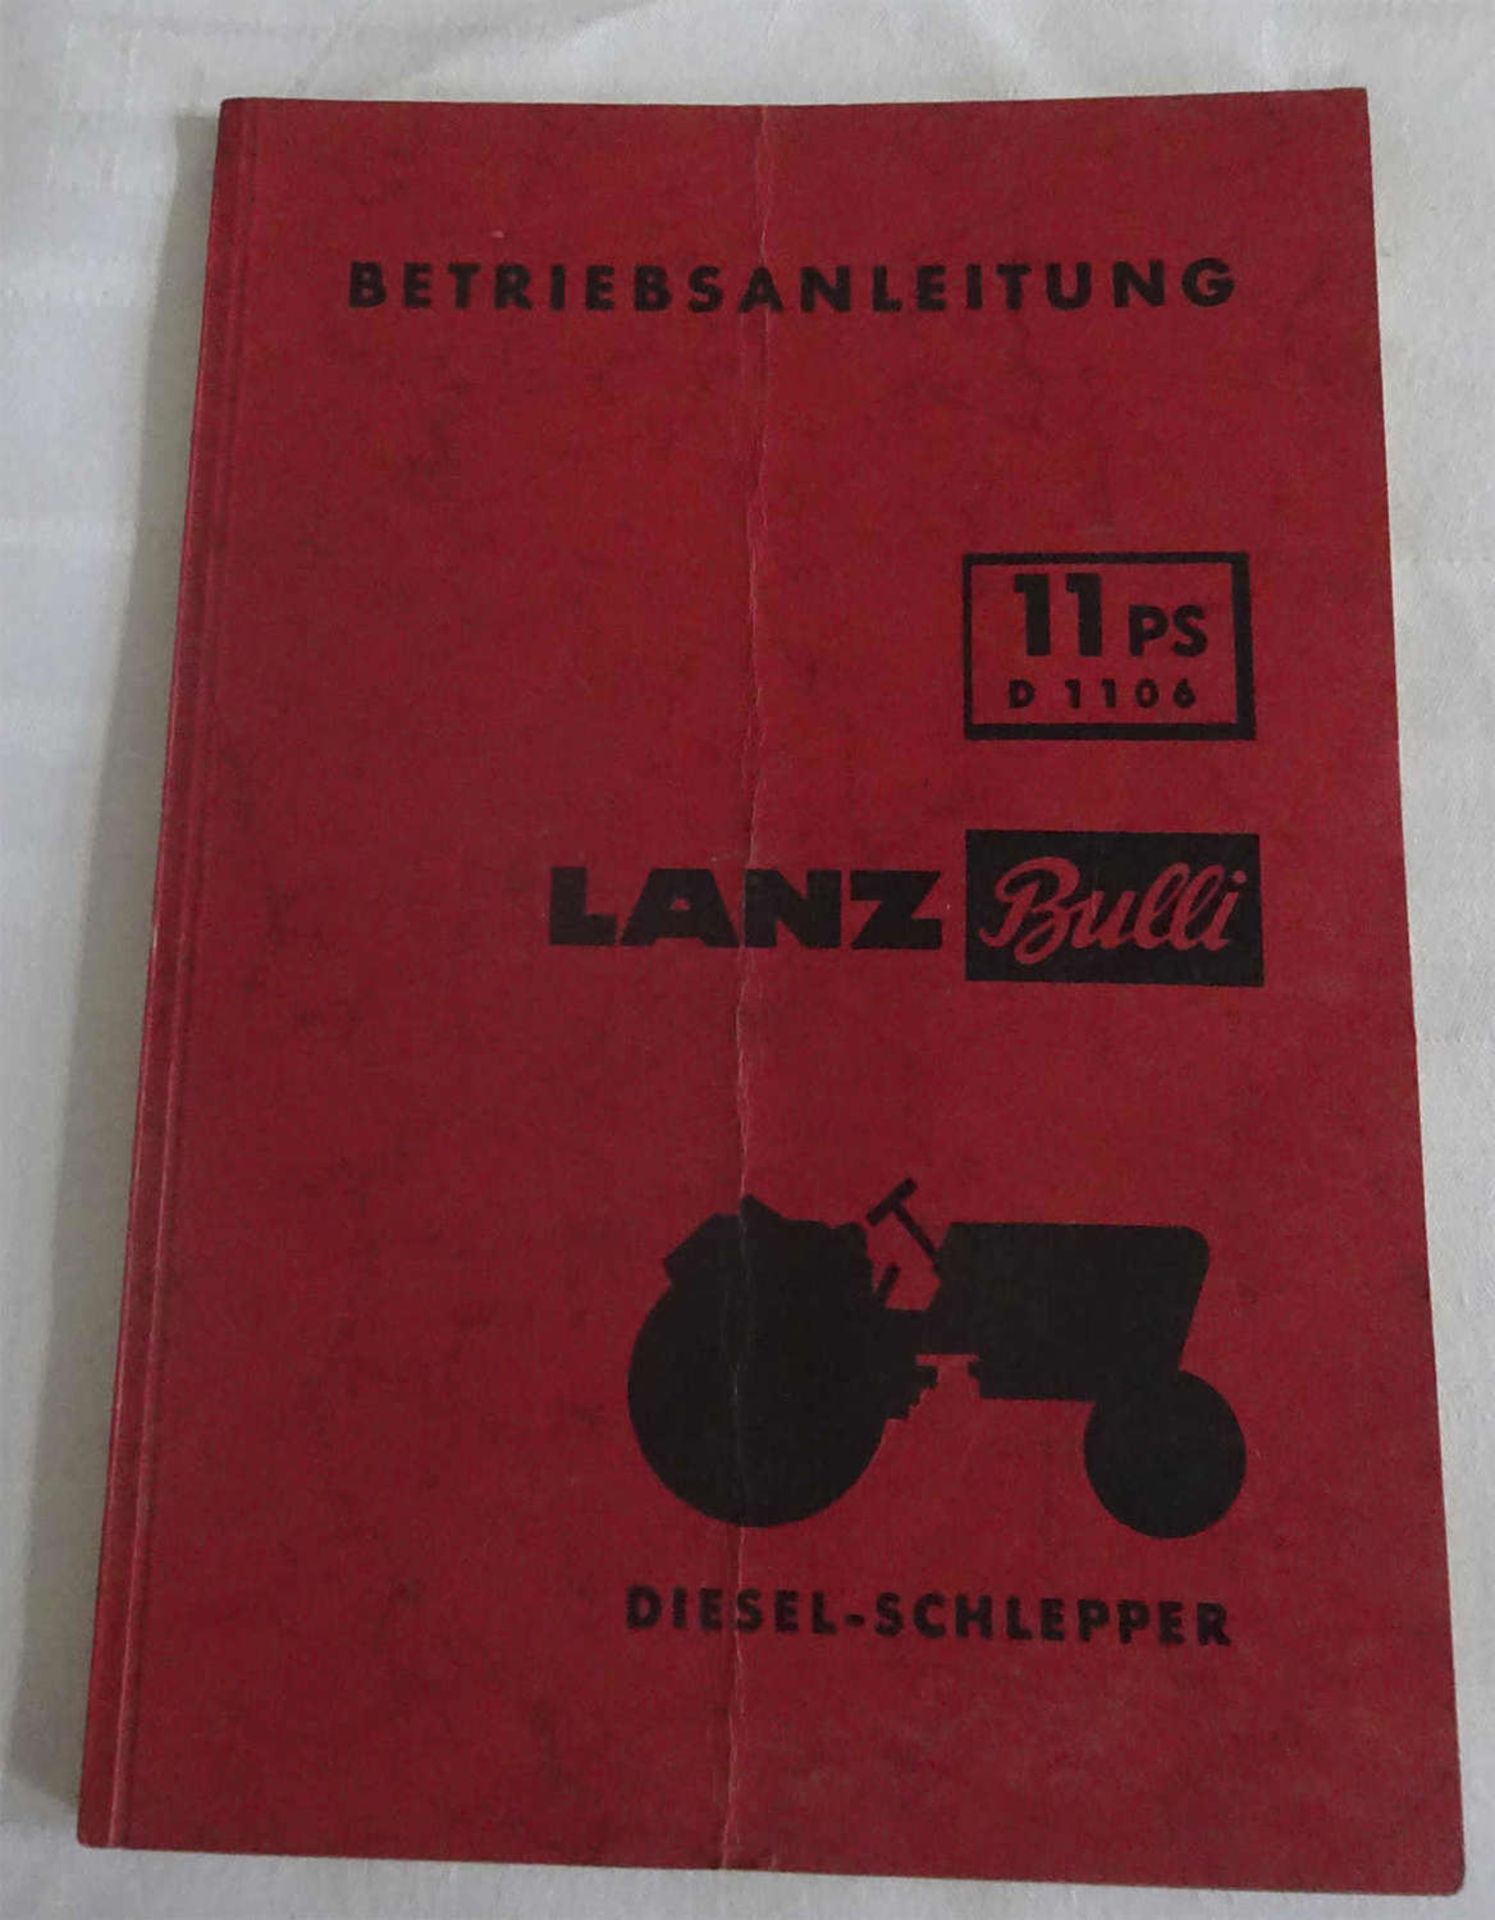 Betriebsanleitung Lanz Bulli 11 PS D 1106 Diesel-Schlepper, November 1956Instruction Manual Lanz